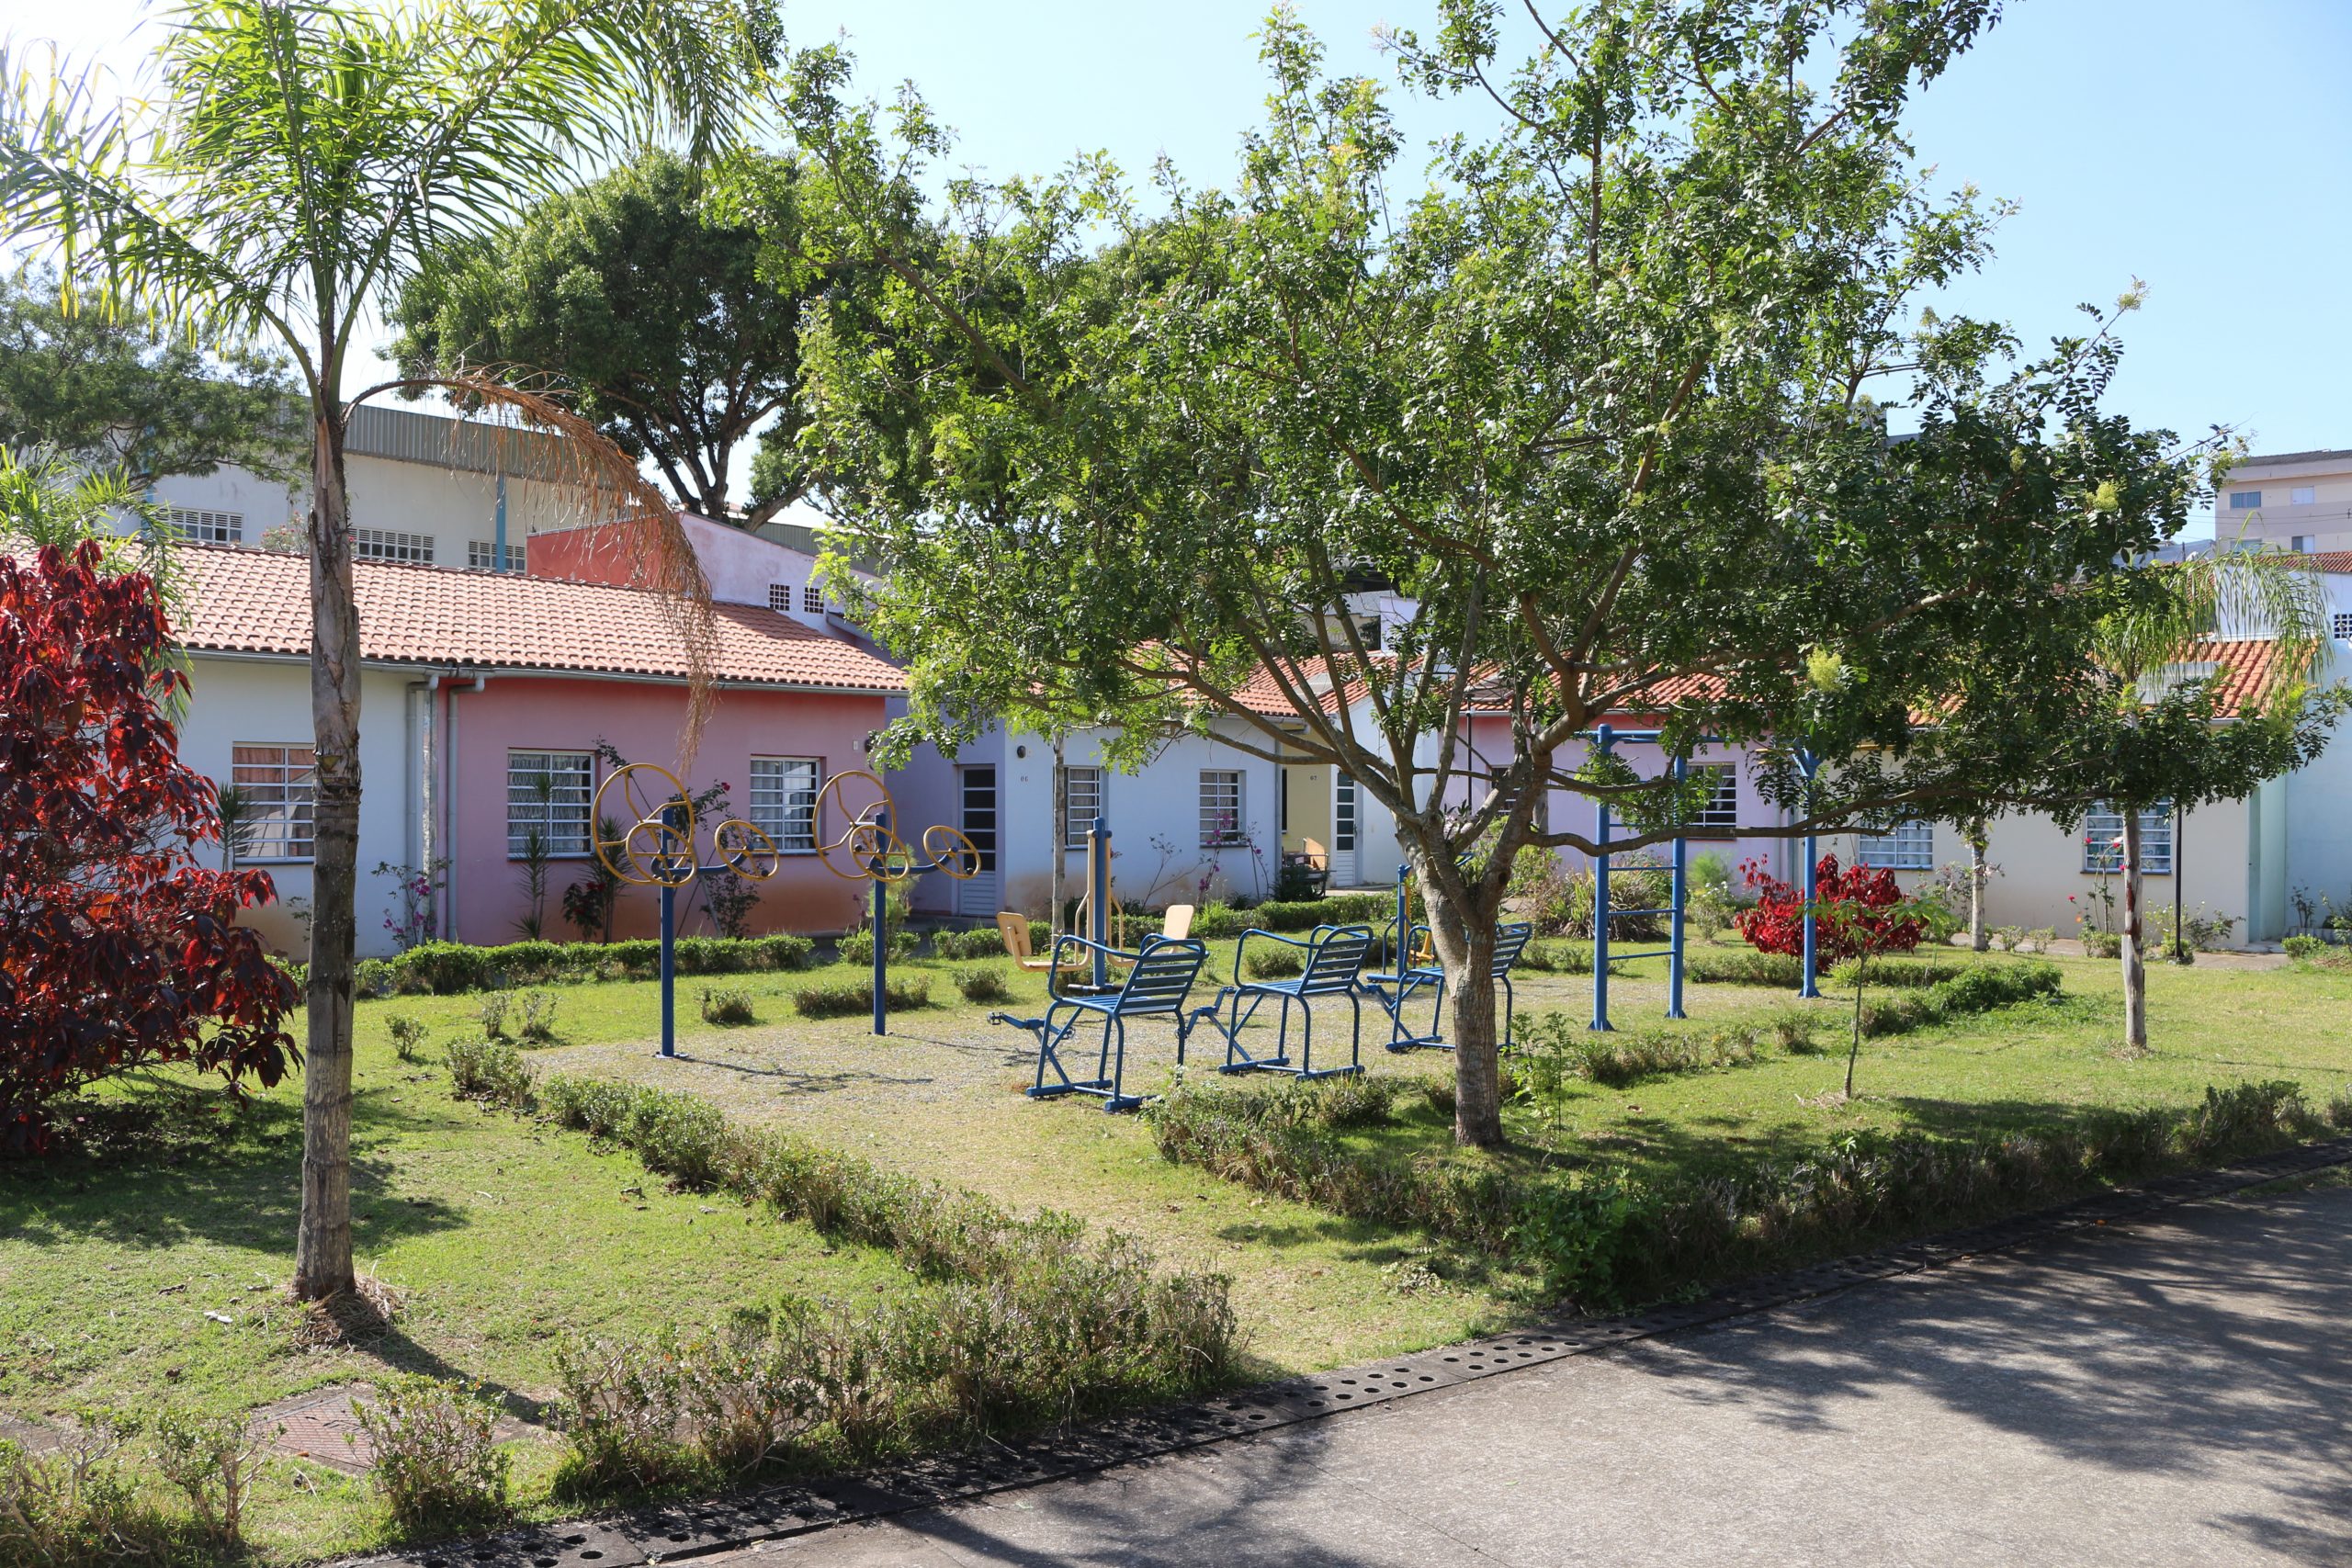 Vila Dignidade - Mogi das Cruzes - Moradia e envelhecimento